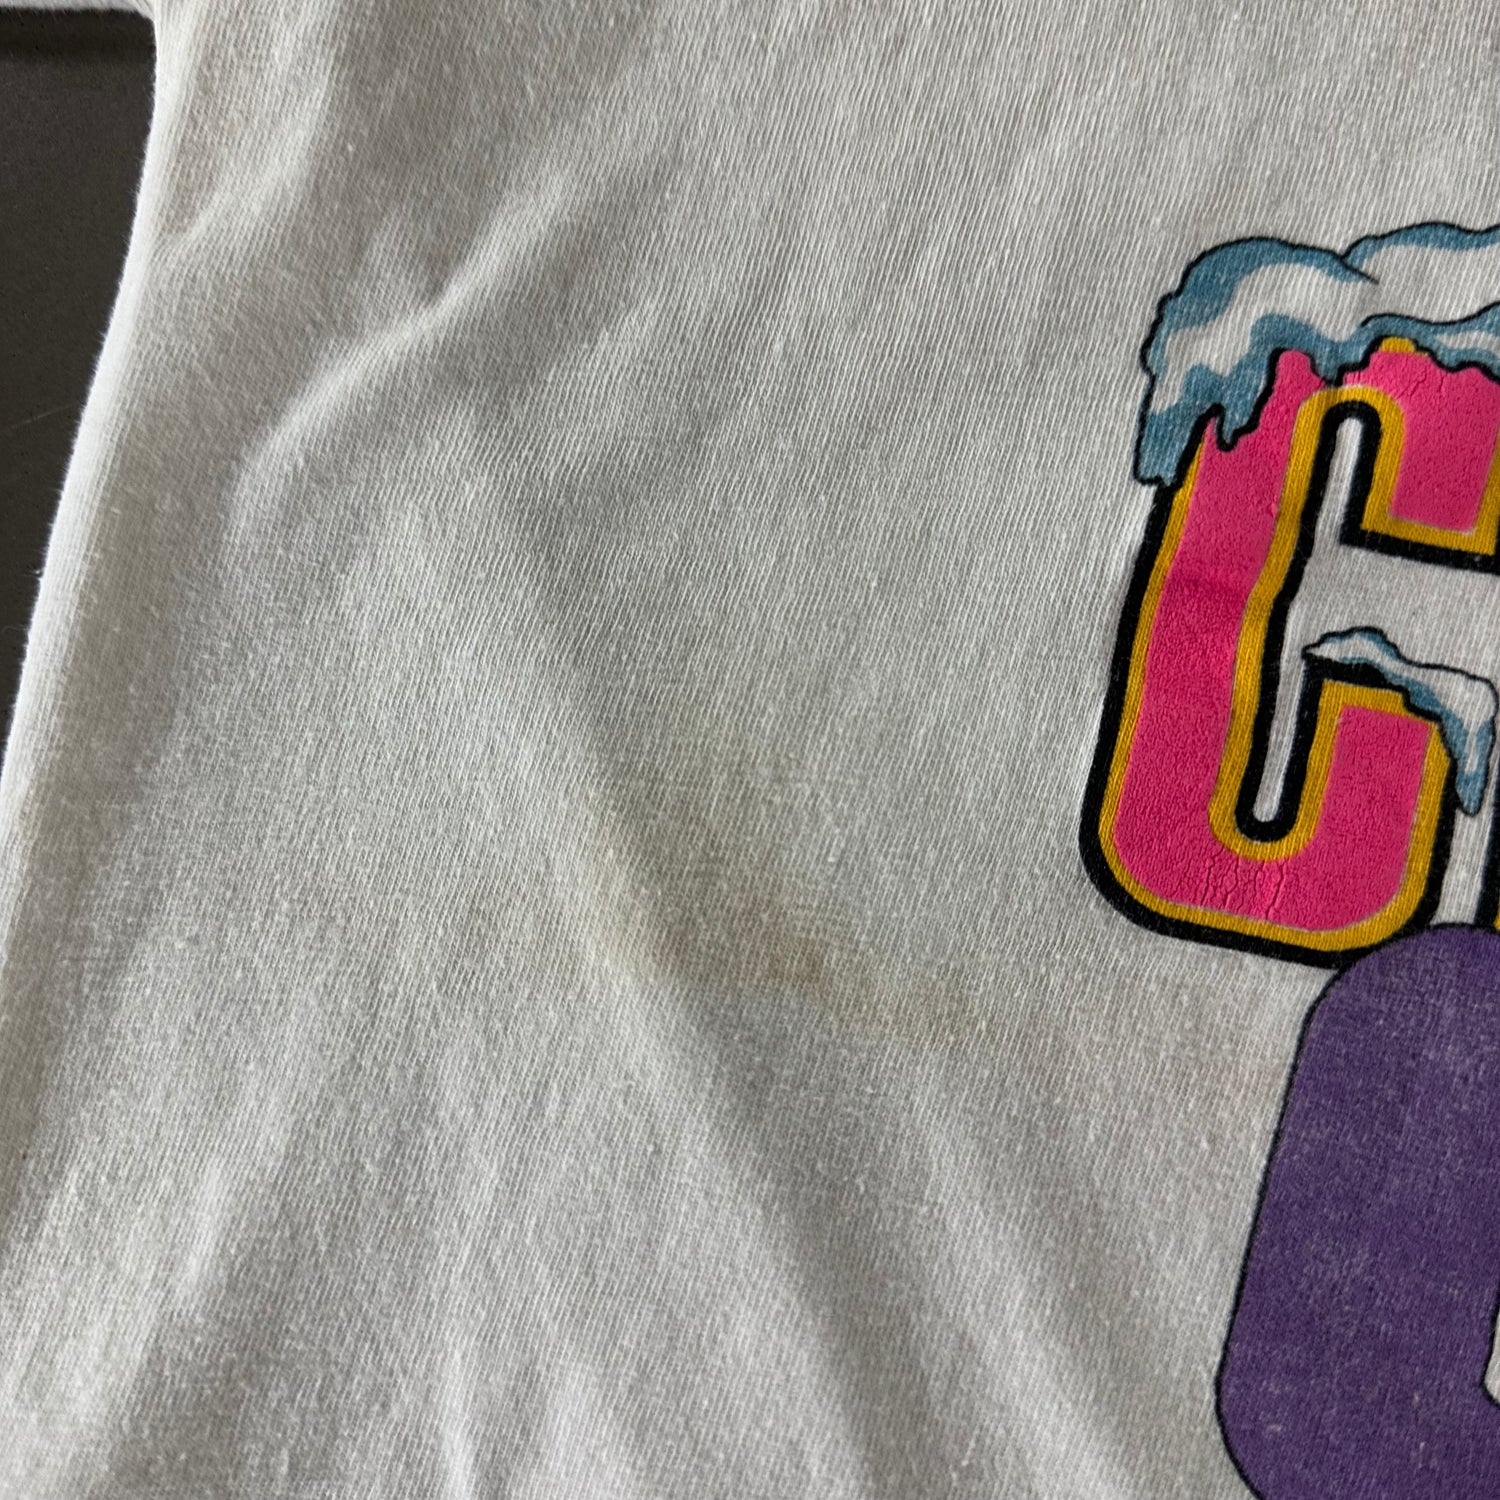 Vintage 1990s Busch Gardens T-shirt size XL